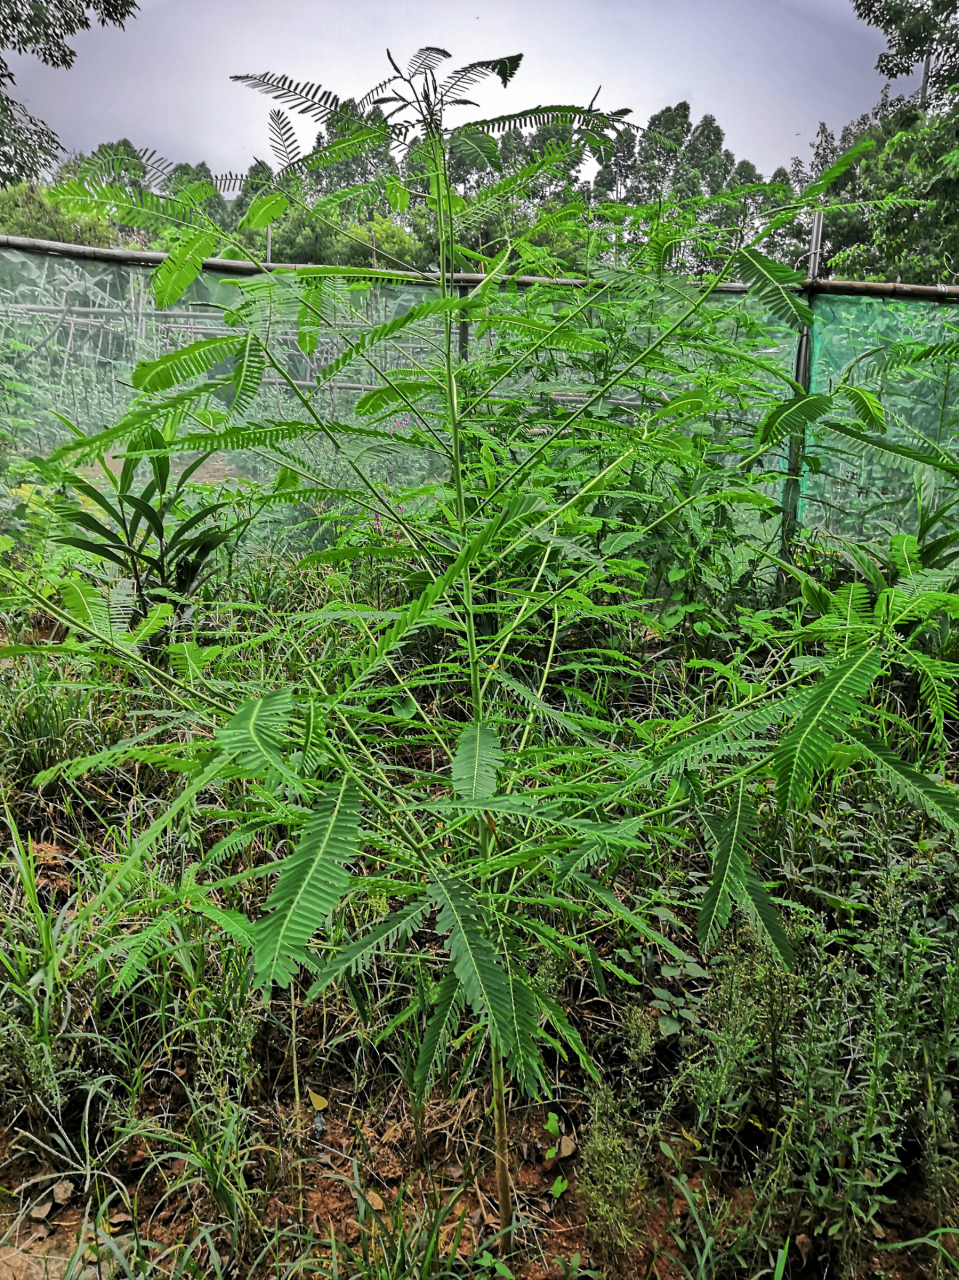 田青 生长非常快的豆科植物 可做动物的食料 药用作用还不知道